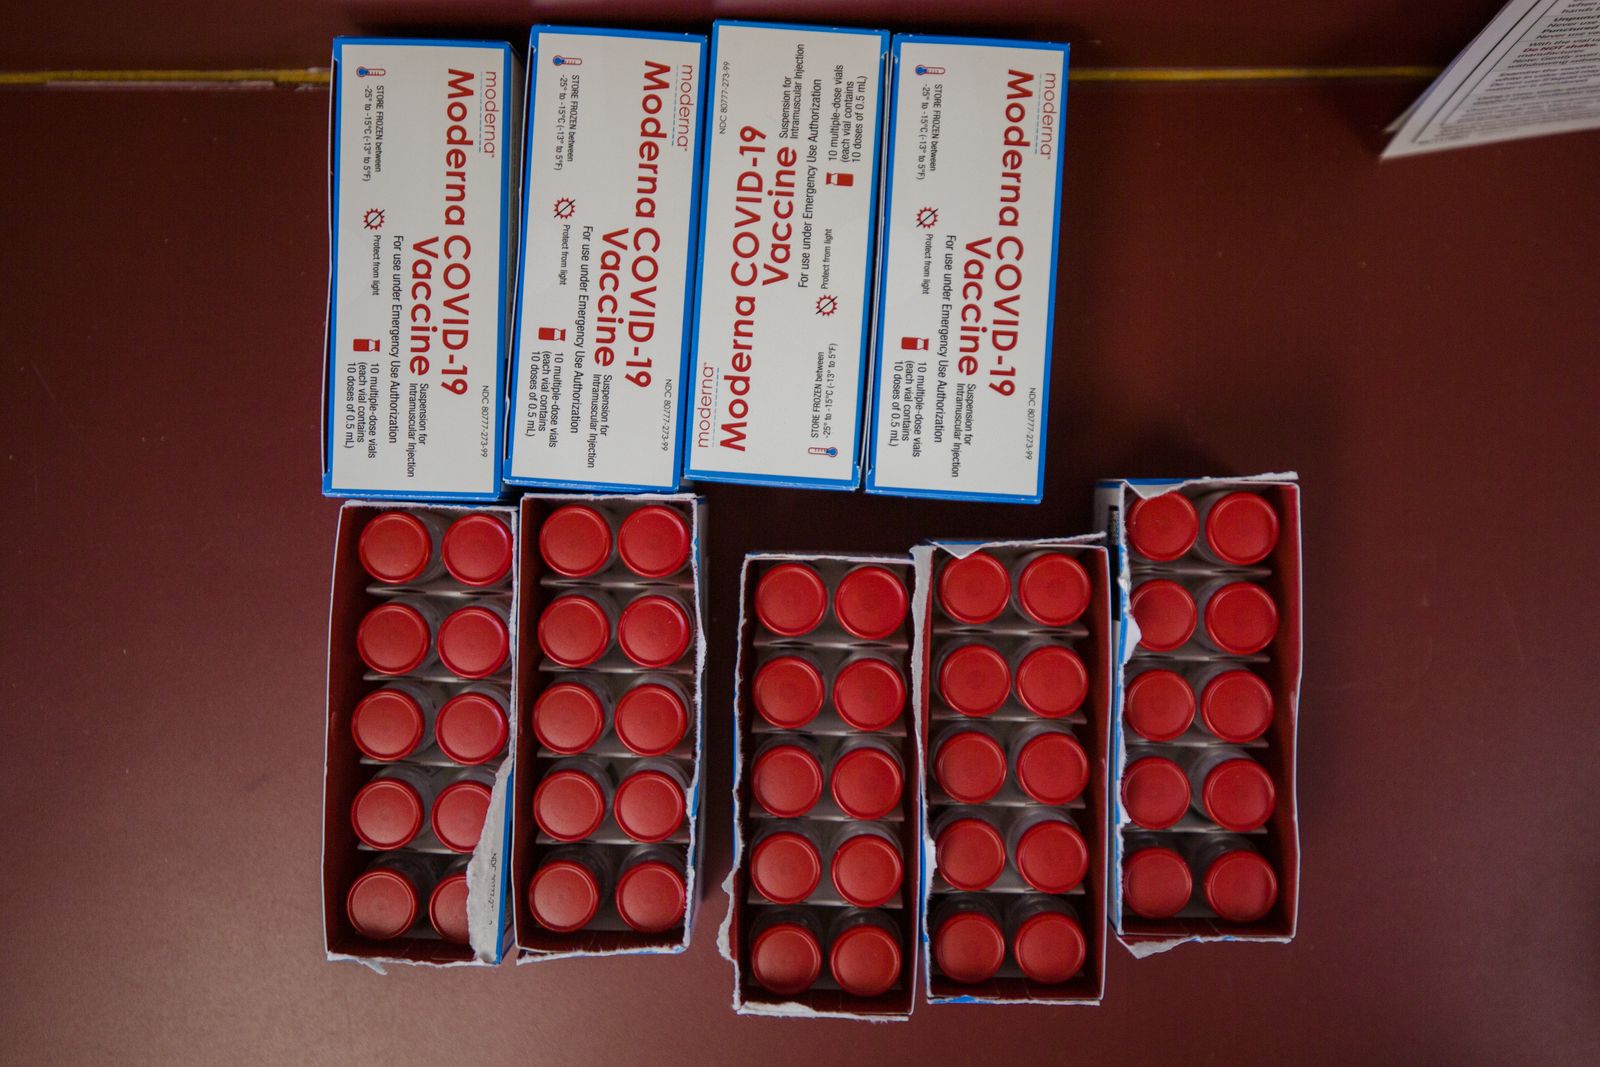 جرعات لقاح موديرنا المضاد لكورونا في صناديق في موقع التطعيم الشامل مكلويد هيلث، داخل حلبة سباق دارلينغتون في ولاية ساوث كارولينا الأميركية. 5 مارس 2021 - Bloomberg